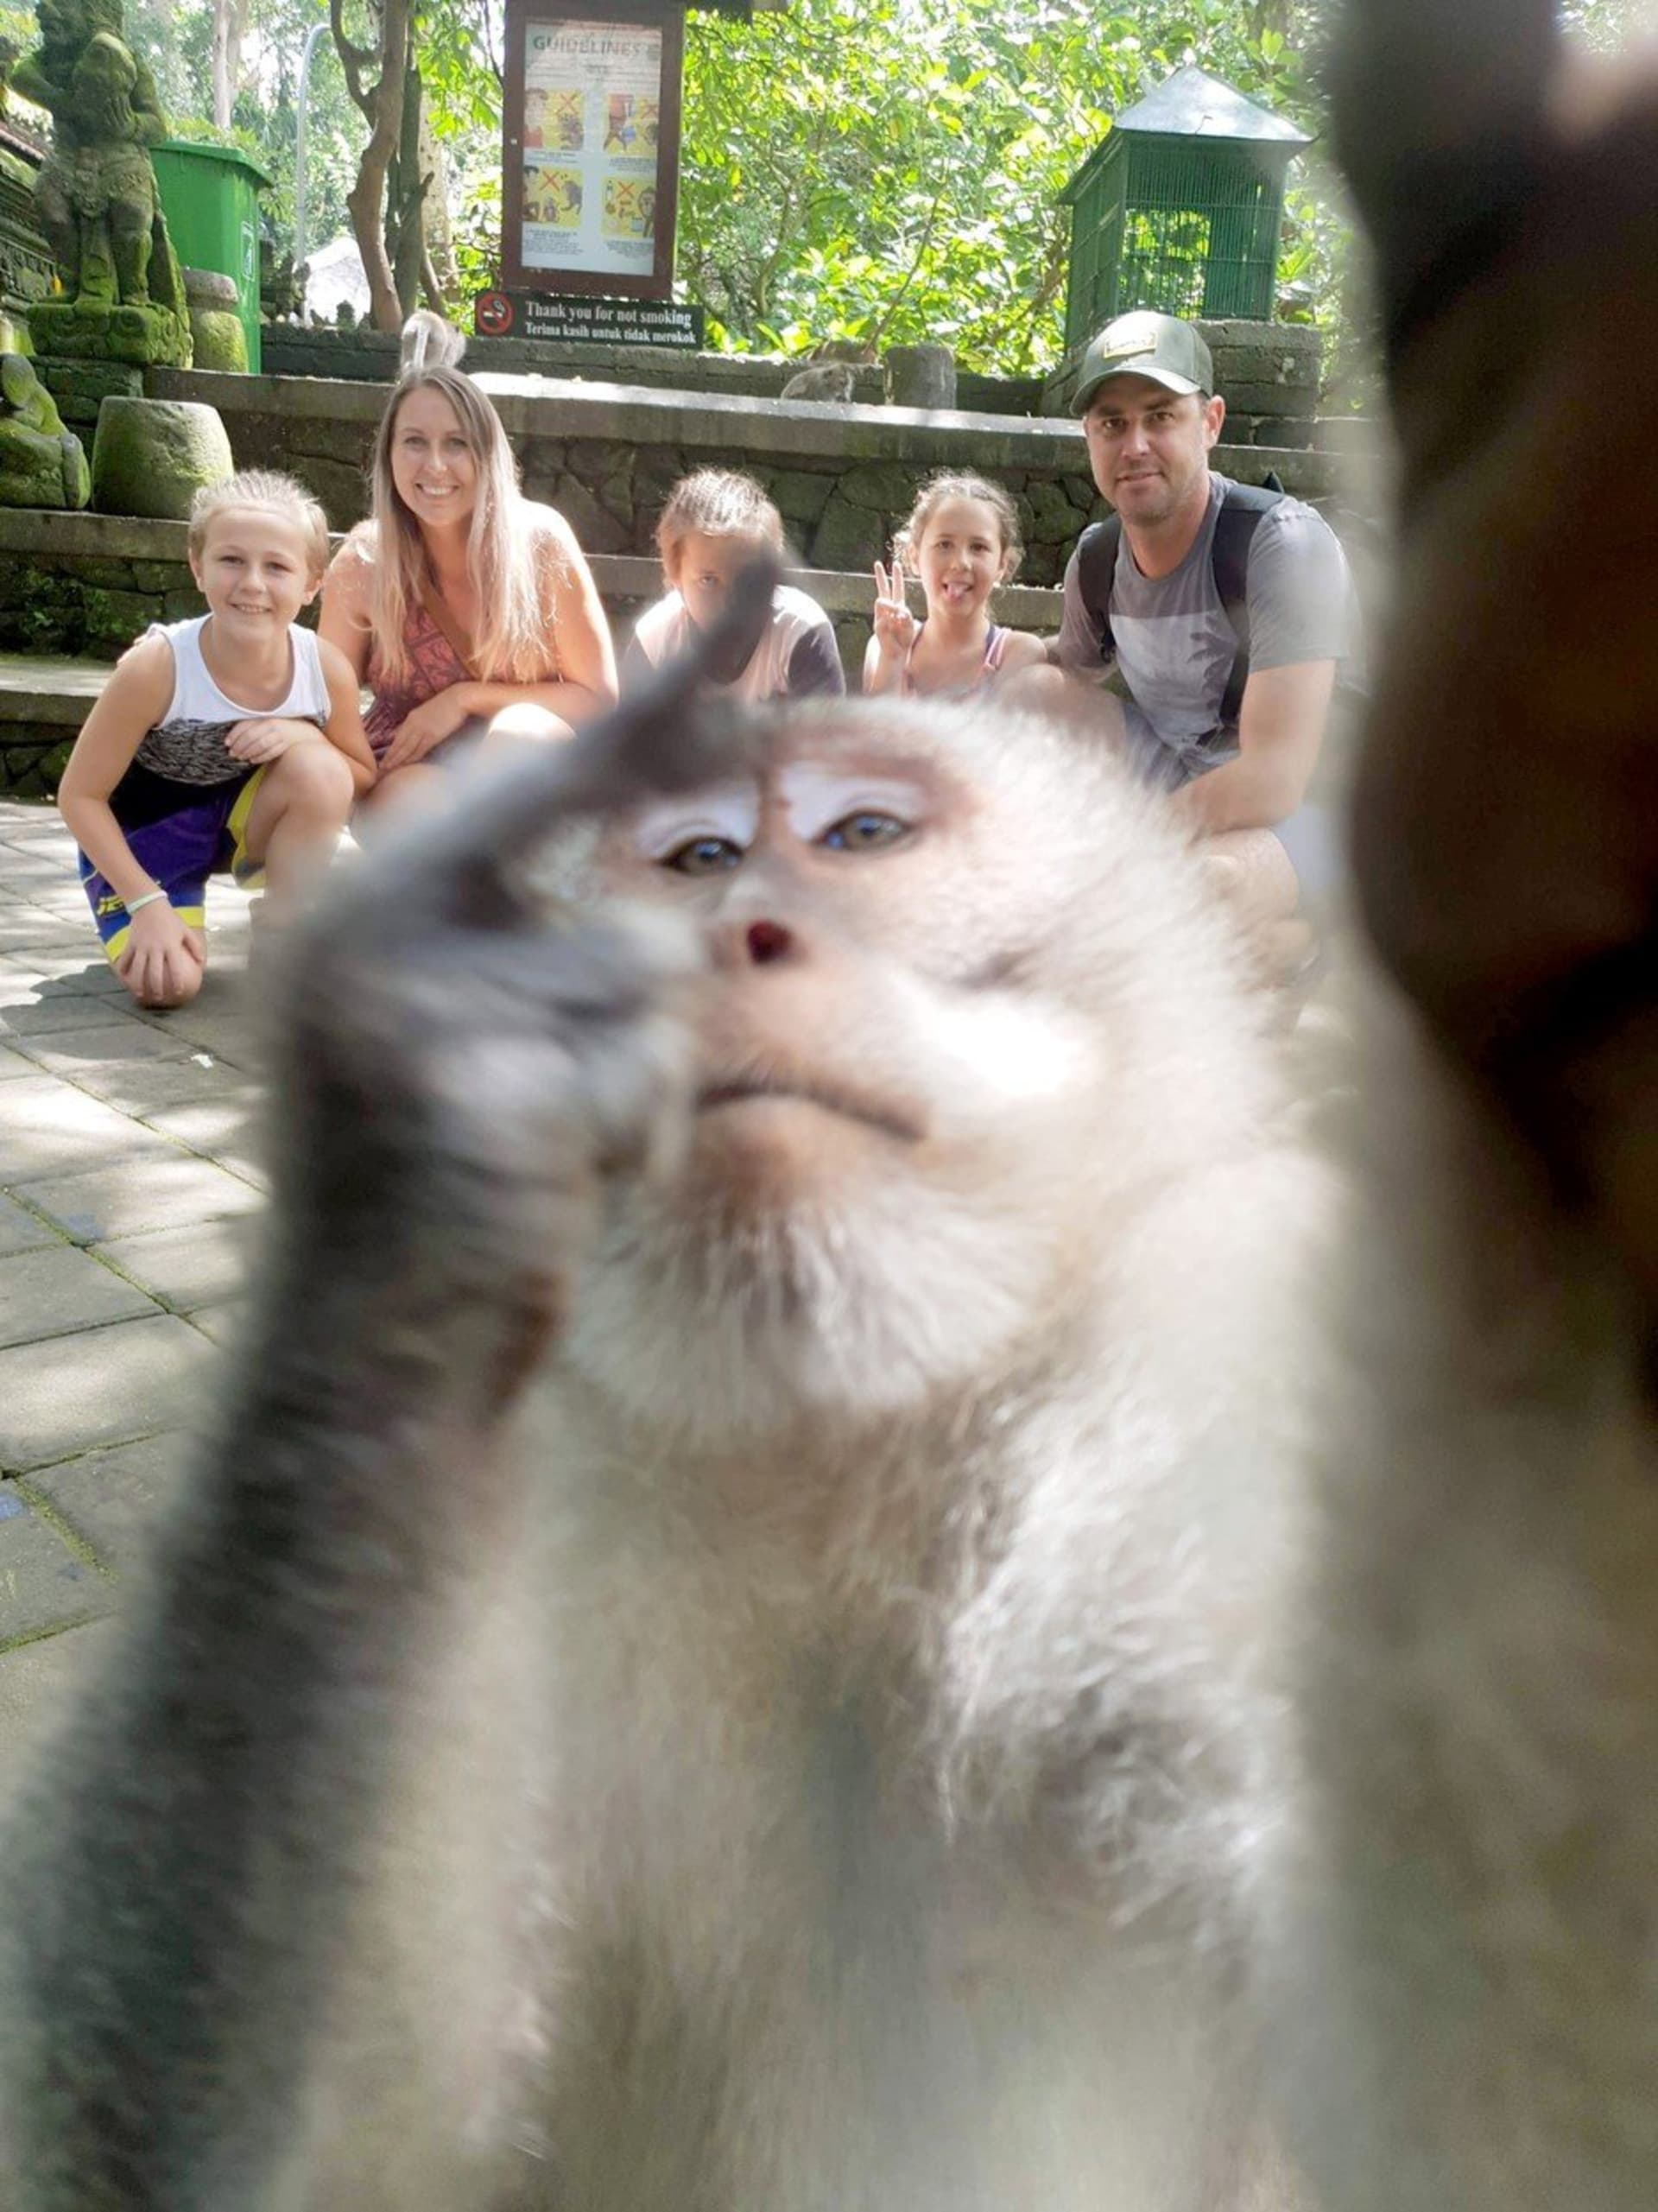 Drzá opice vystrčila na rodinné fotografii prostředníček 1